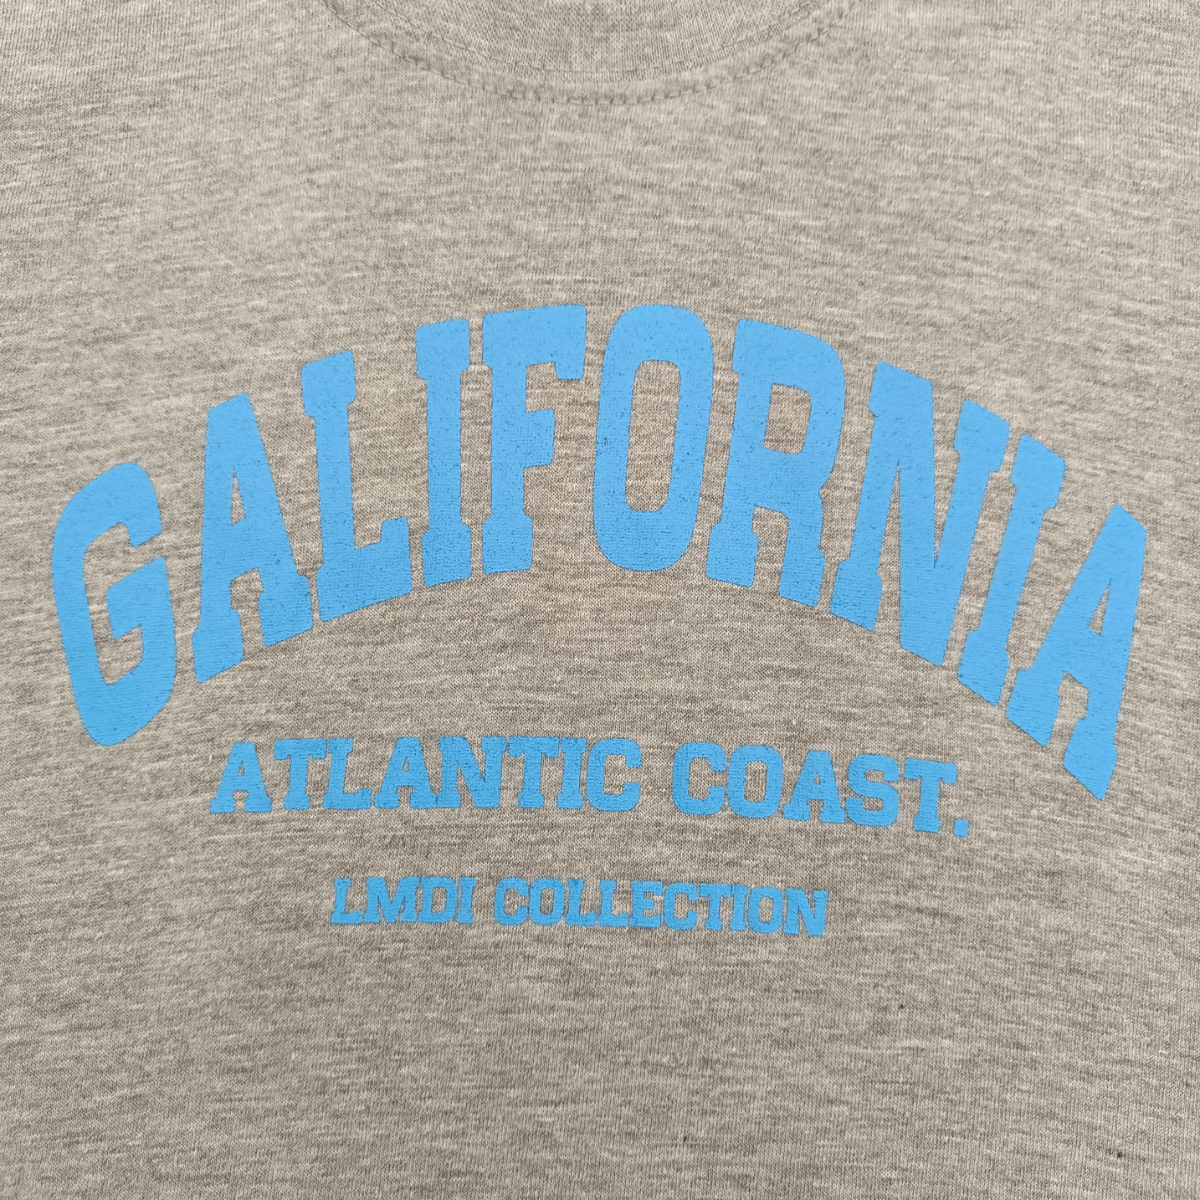 Camiseta Galifornia Atlantic Coast LMDI Collection (azul)